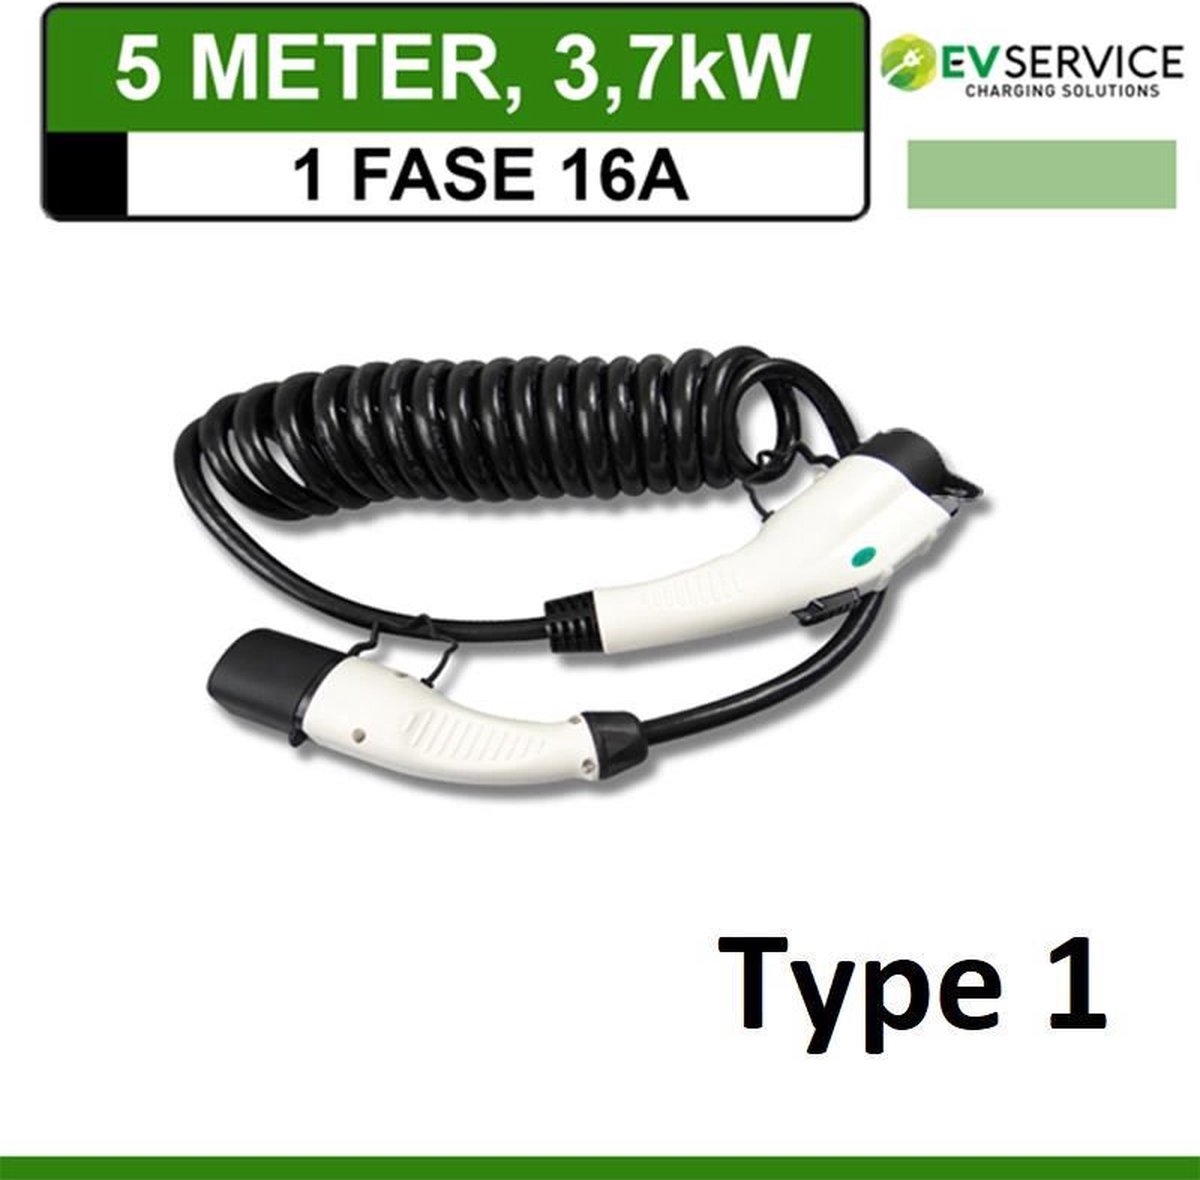 EVservice elektrische auto type 1 laadkabel spiral mode 3 EV snellaadkabel voor elektrische voertuigen EV en PHEV 3,7 KW tot 7,4KW voor elektrische voertuigen (1 fase 16A 3,7KW - 5M)